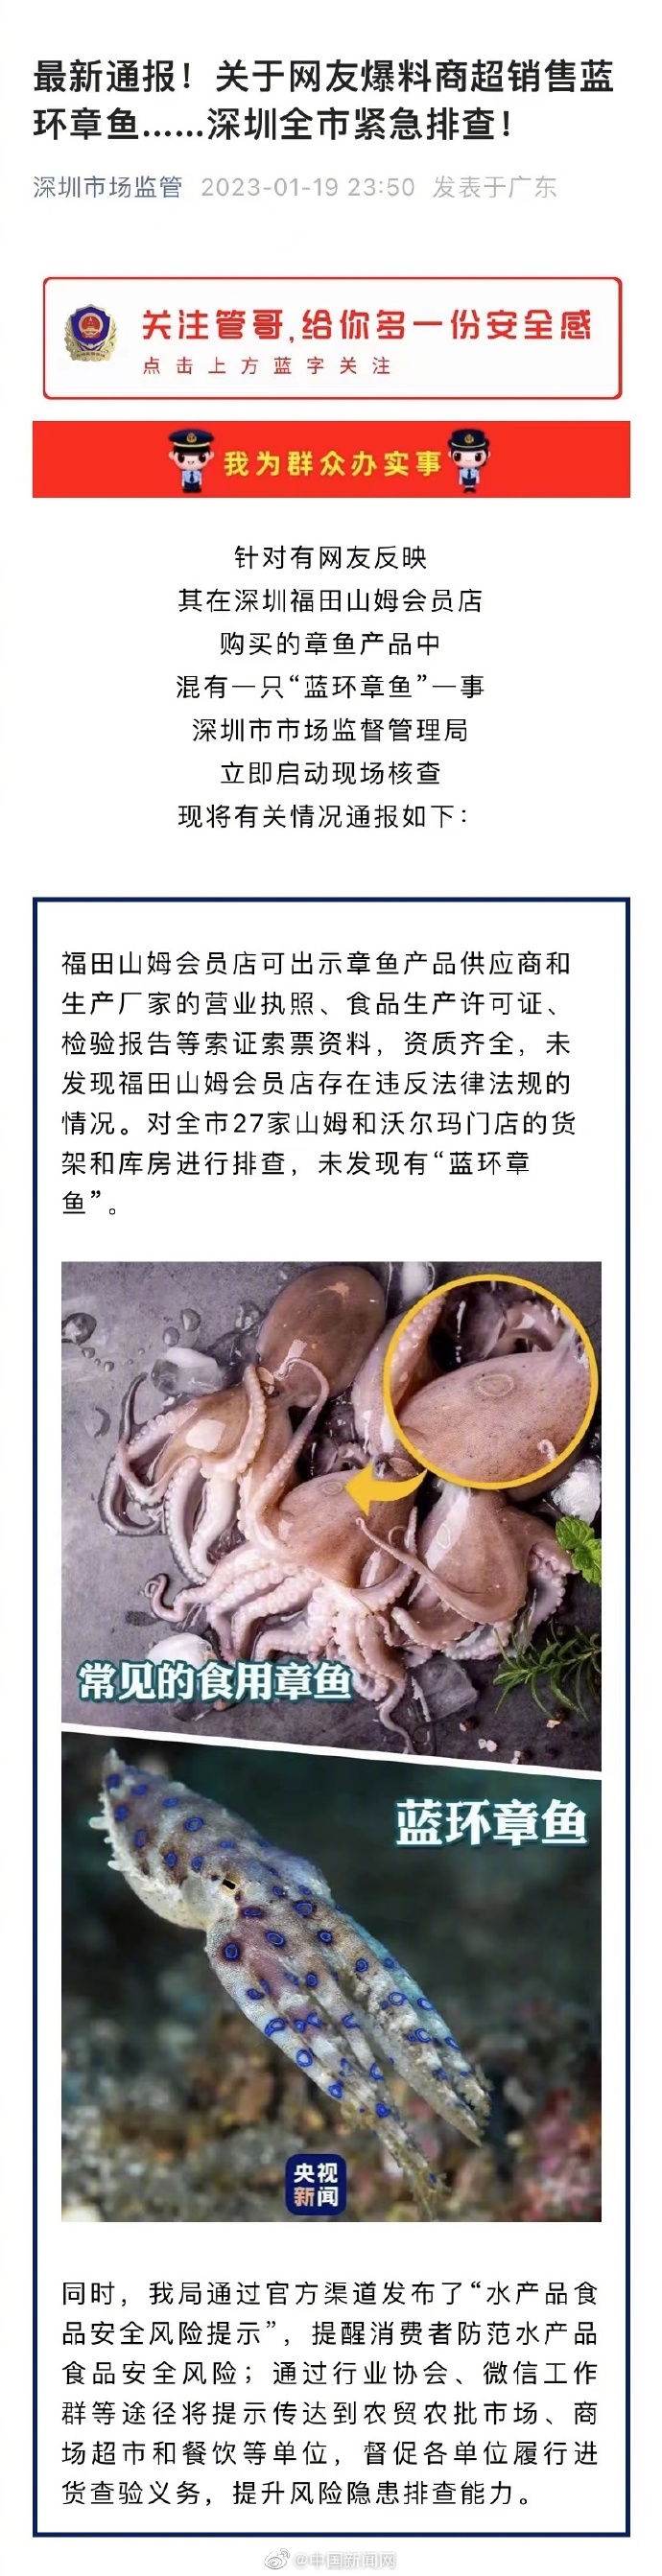 深圳市监局通报蓝环章鱼排查情况：未发现有蓝环章鱼